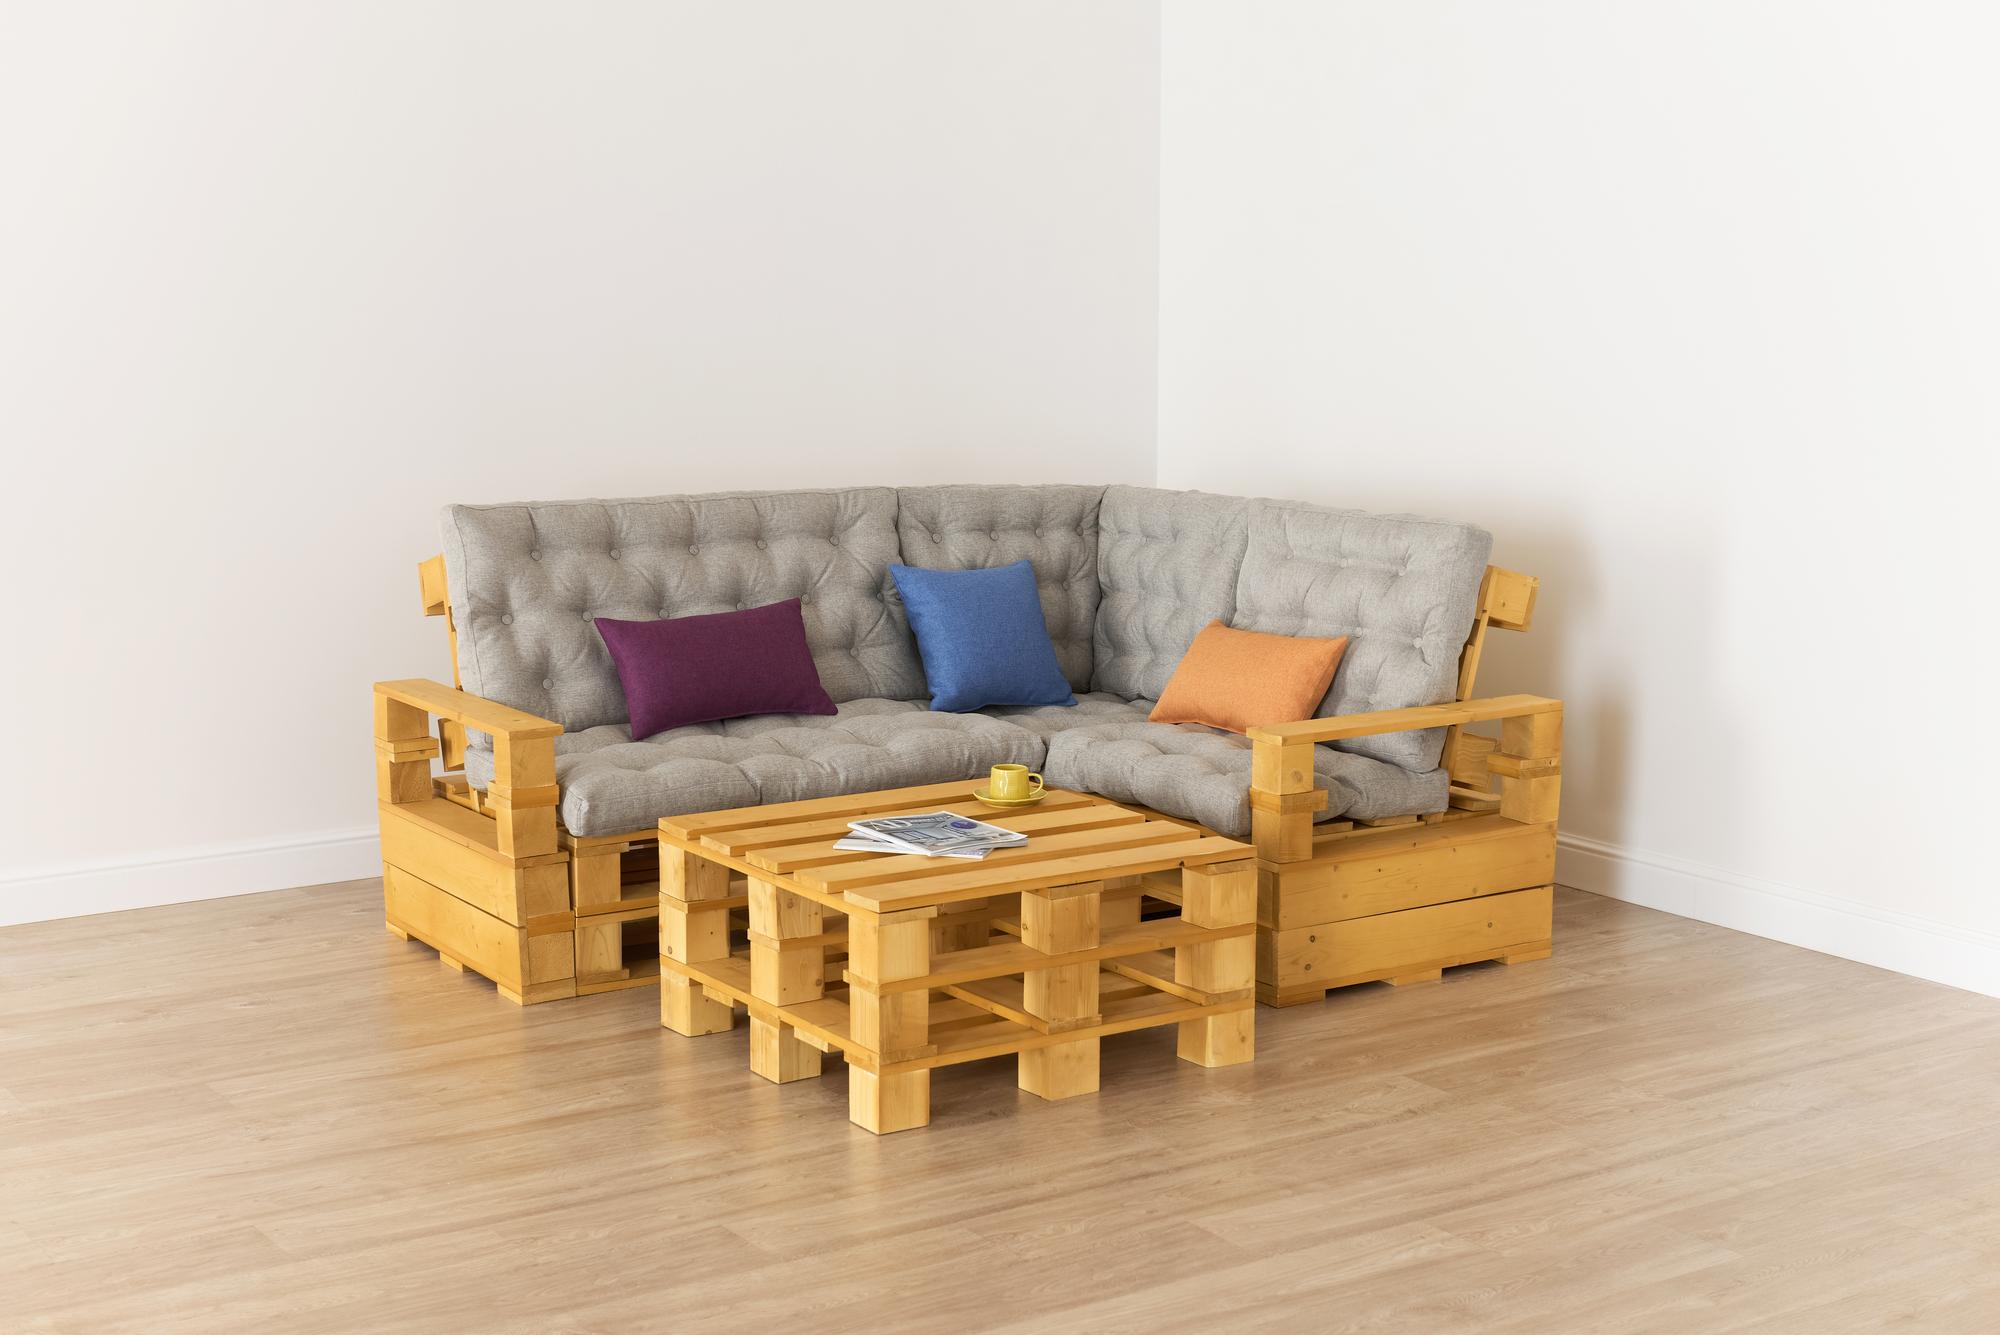 Купить Подлокотник + Диван 70 + угловой диван + диван 110 + подлокотник + стол от производителя “Архитектория” фото №1